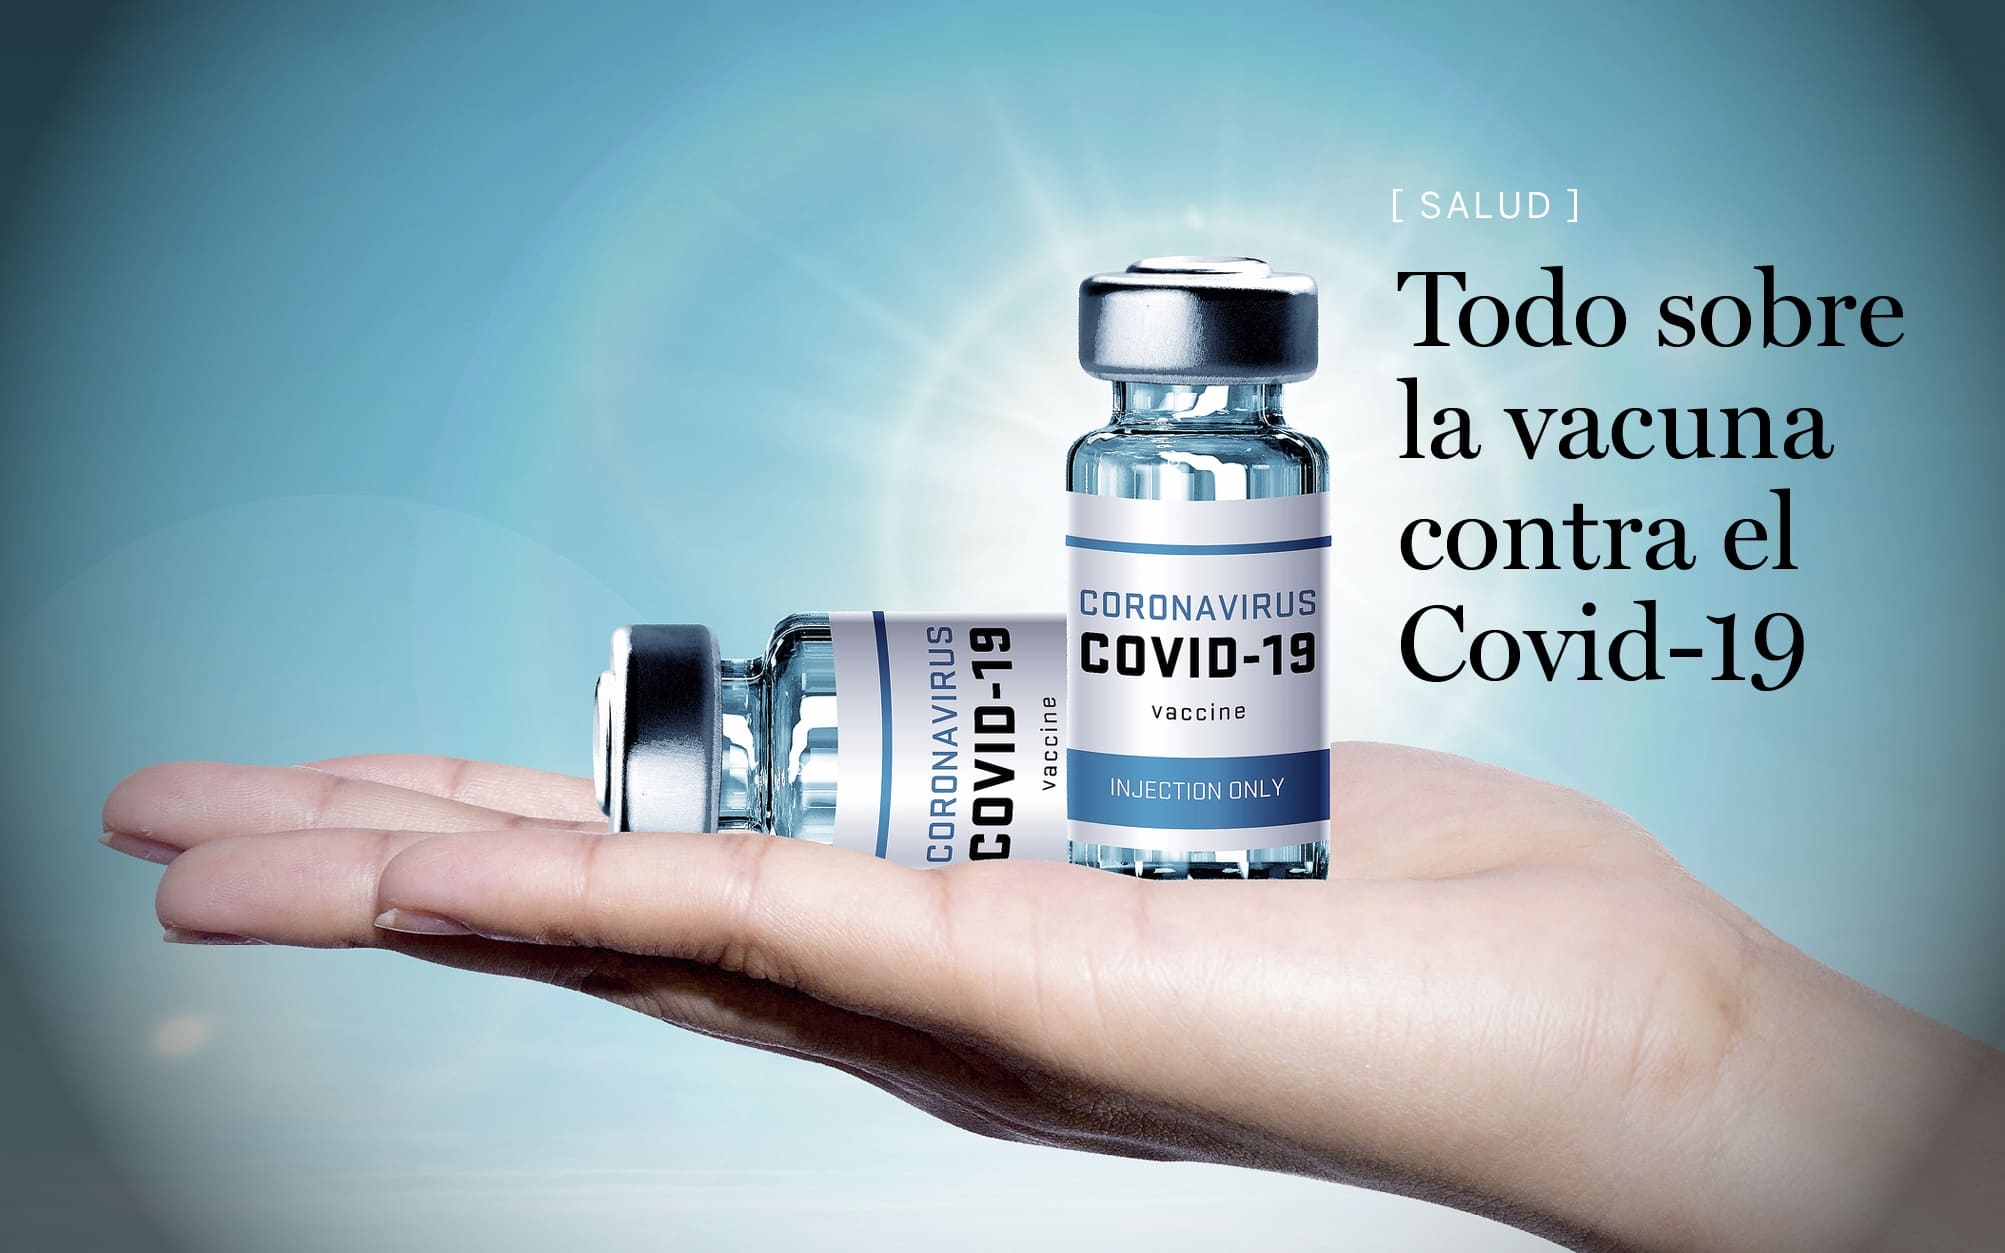 Todo sobre la vacuna del Covid-19 (parte 3)